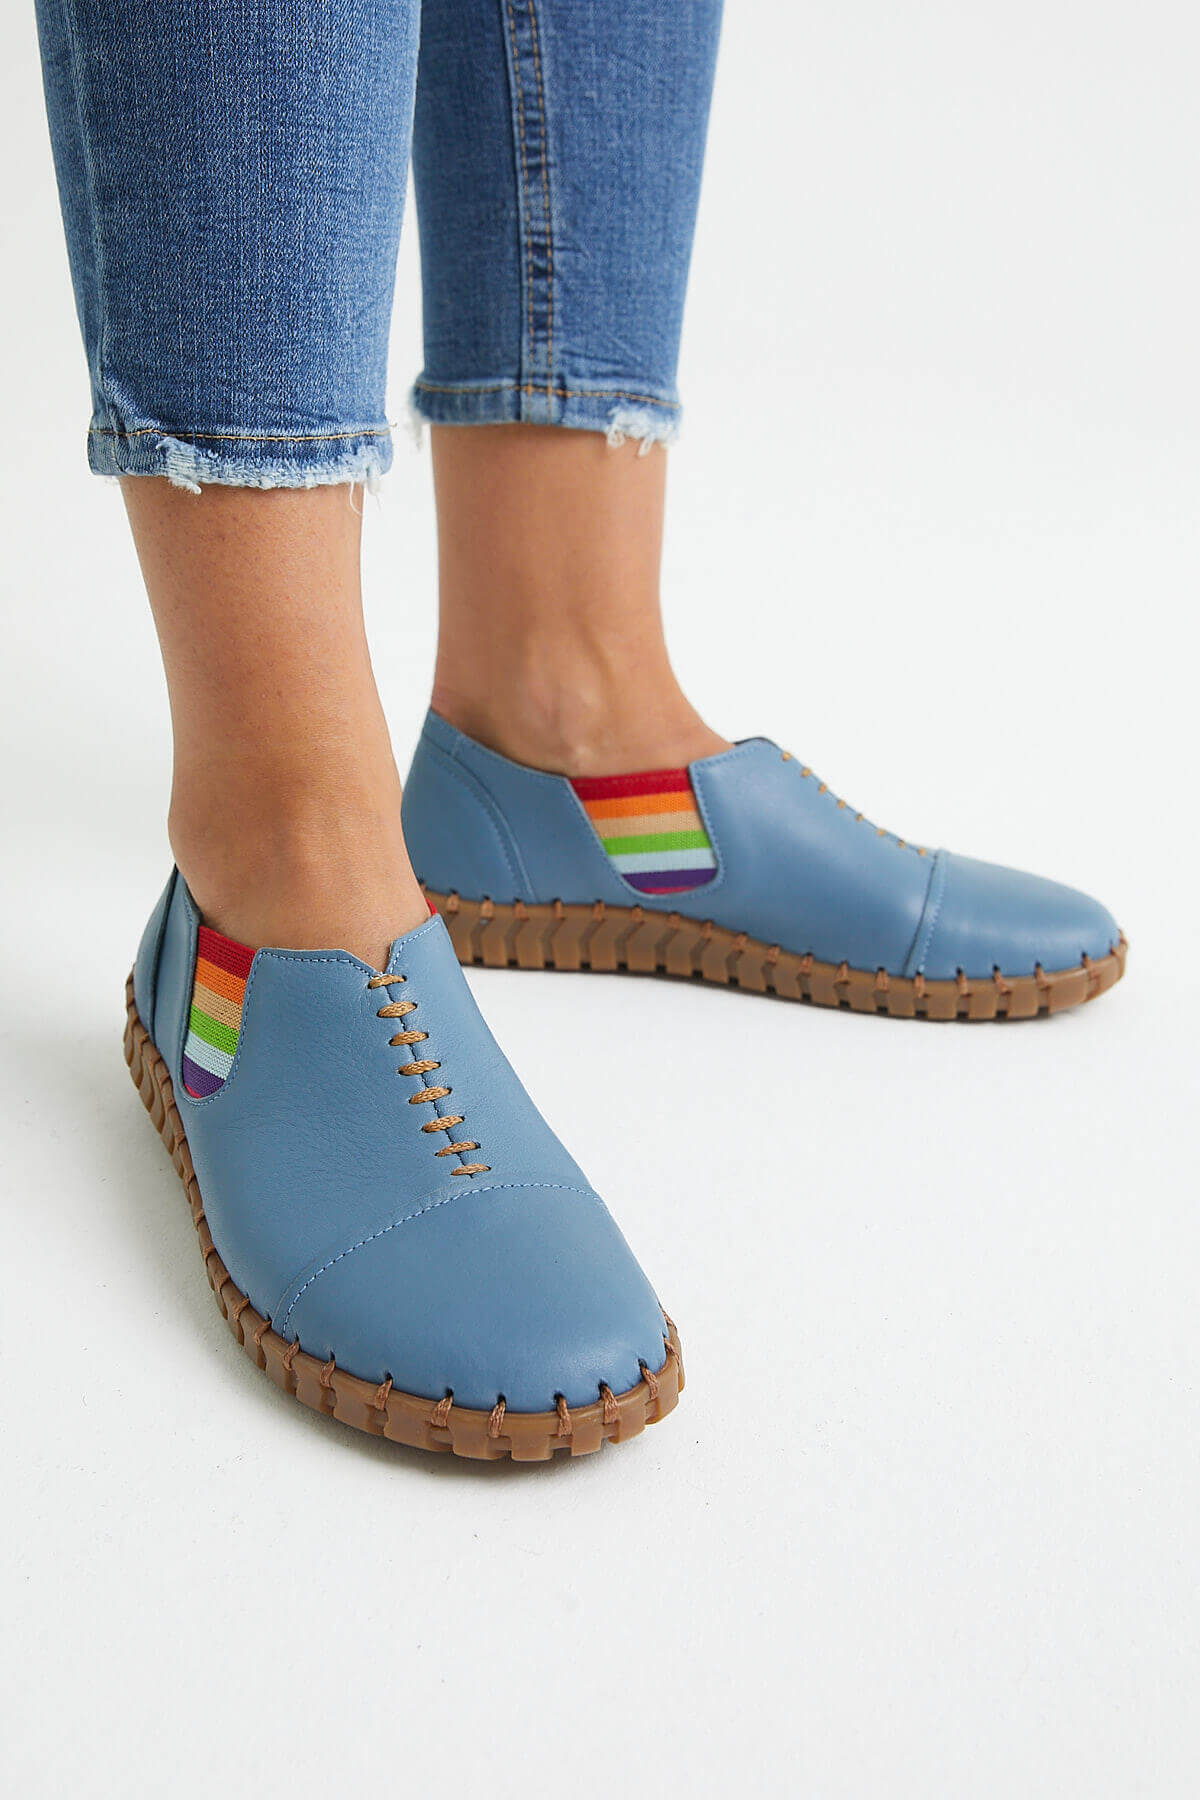 Kadın Comfort Ayakkabı Mavi 2010703Y - Thumbnail